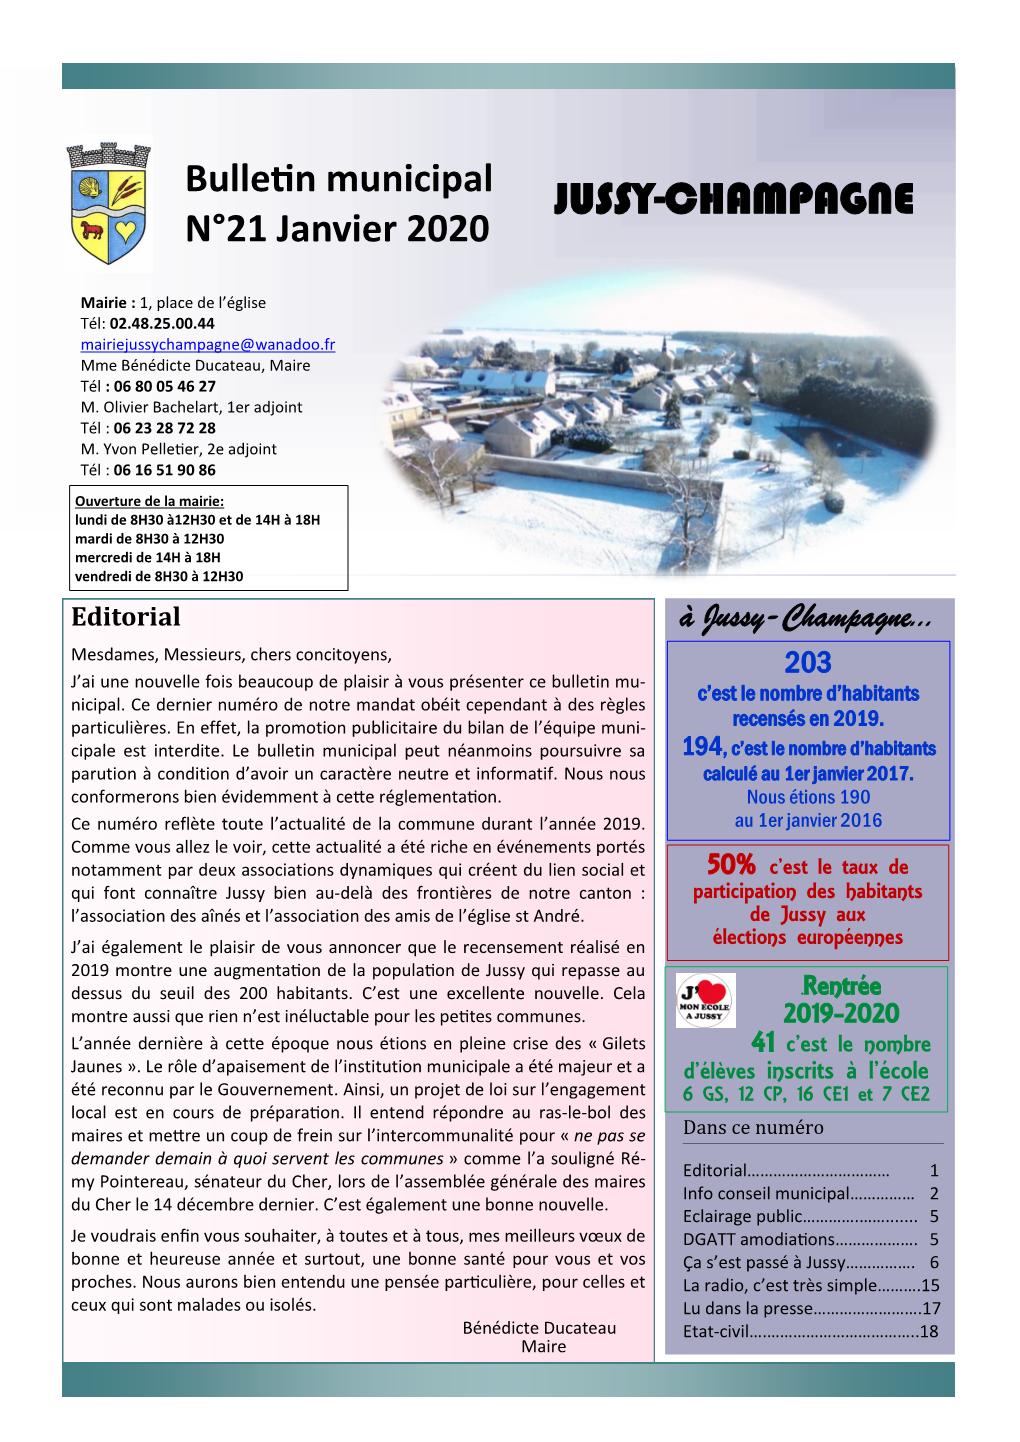 20191227 À 9H30 Journal Municipal N°21 Janv 2020 FINAL